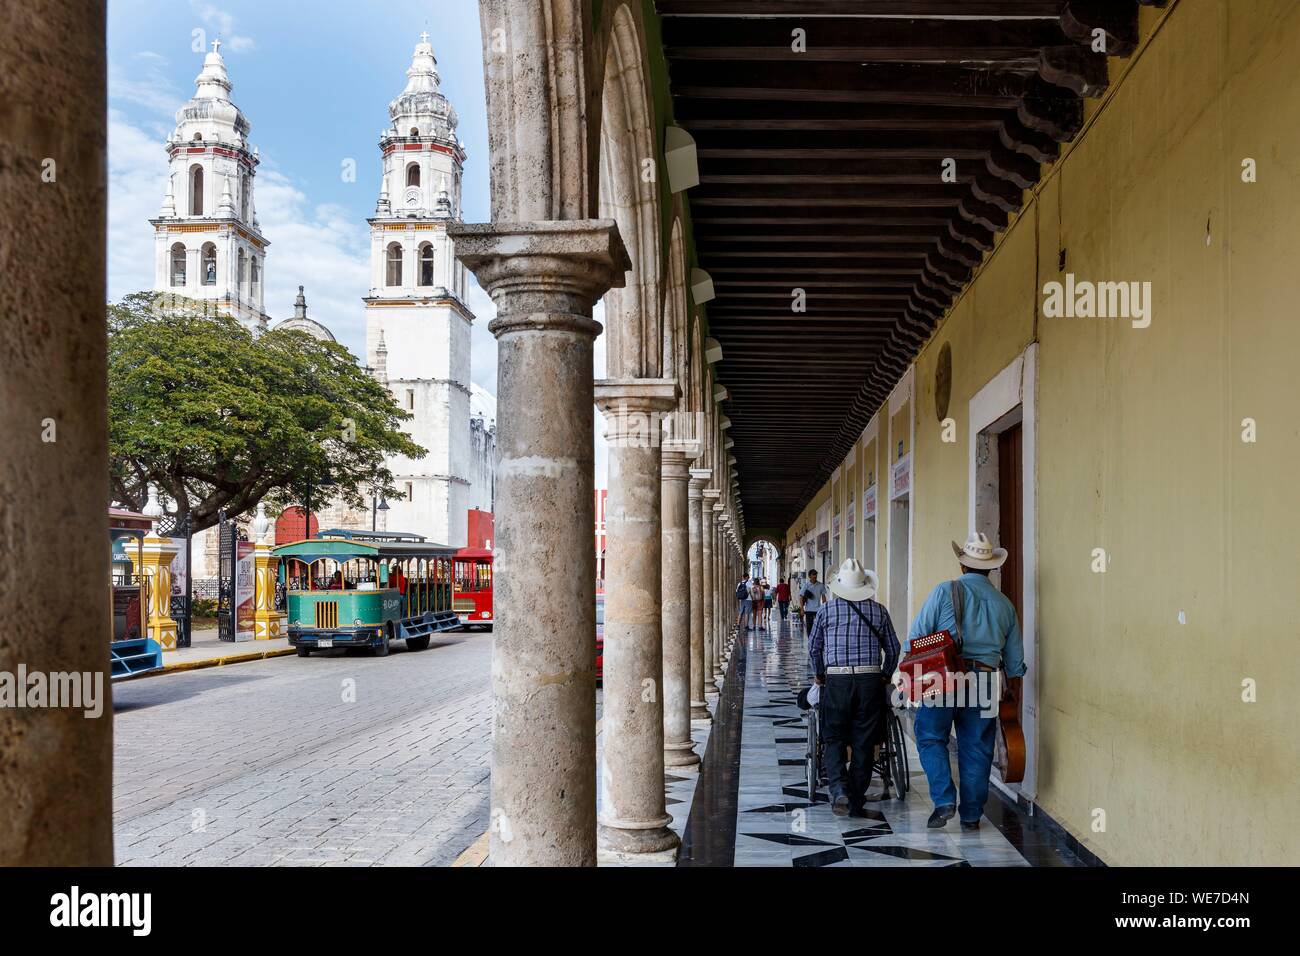 Le Mexique, l'État de Campeche, Campeche, ville fortifiée inscrite au Patrimoine Mondial de l'UNESCO, les arcades et Nuestra Senora de la cathédrale de la Purisima Concepcion Banque D'Images